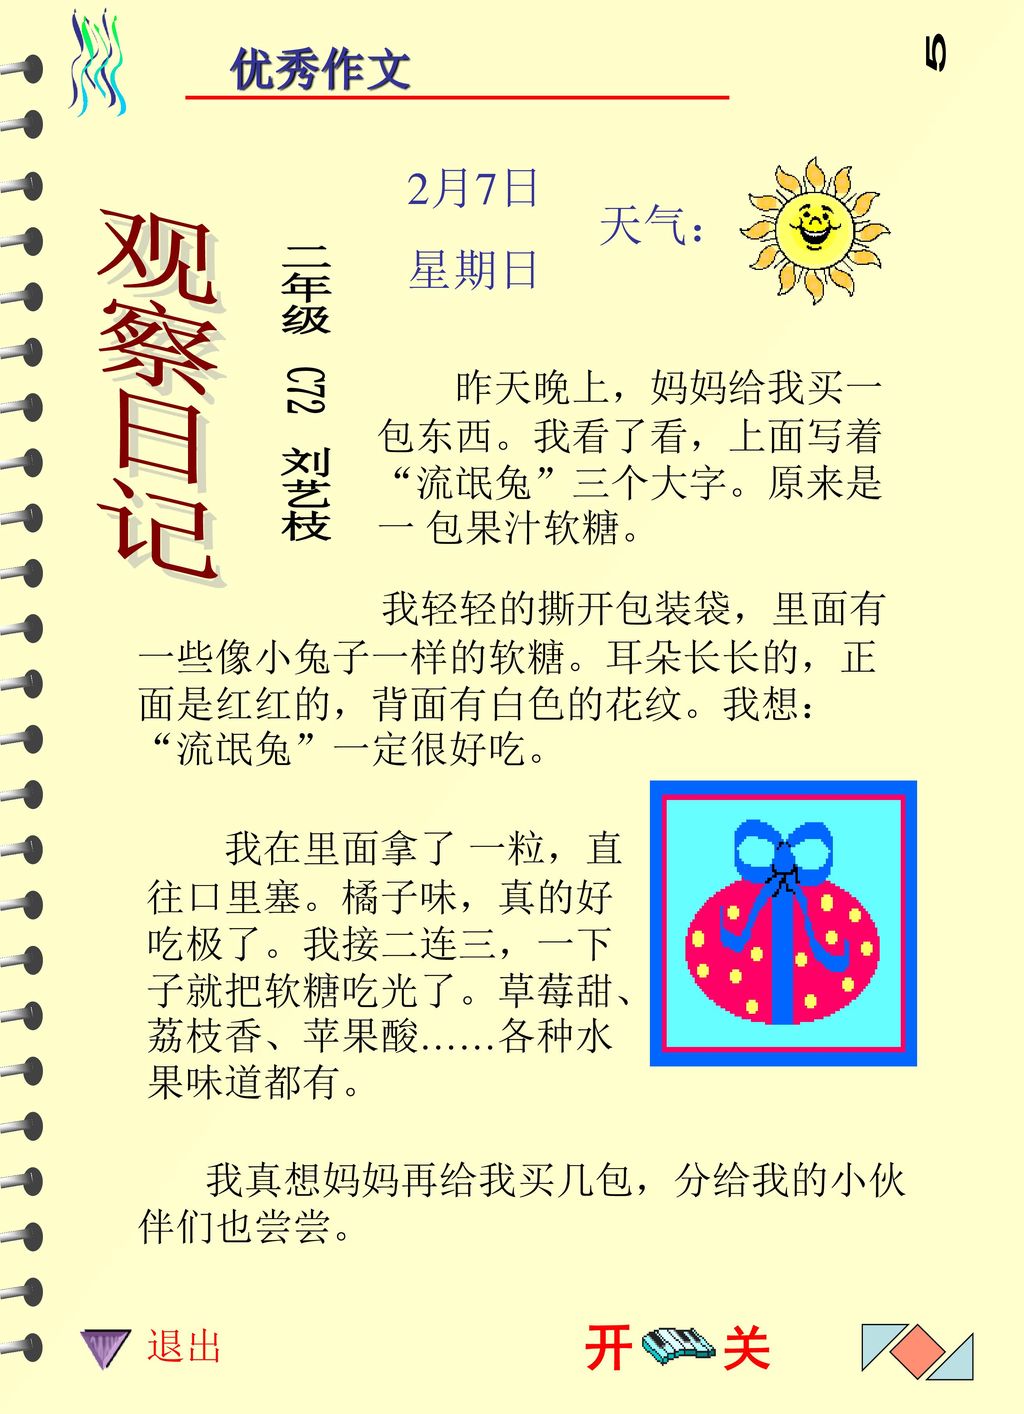 川 5 观察日记 二年级 C72 刘艺枝 开 关 优秀作文 2月7日 星期日 天气：